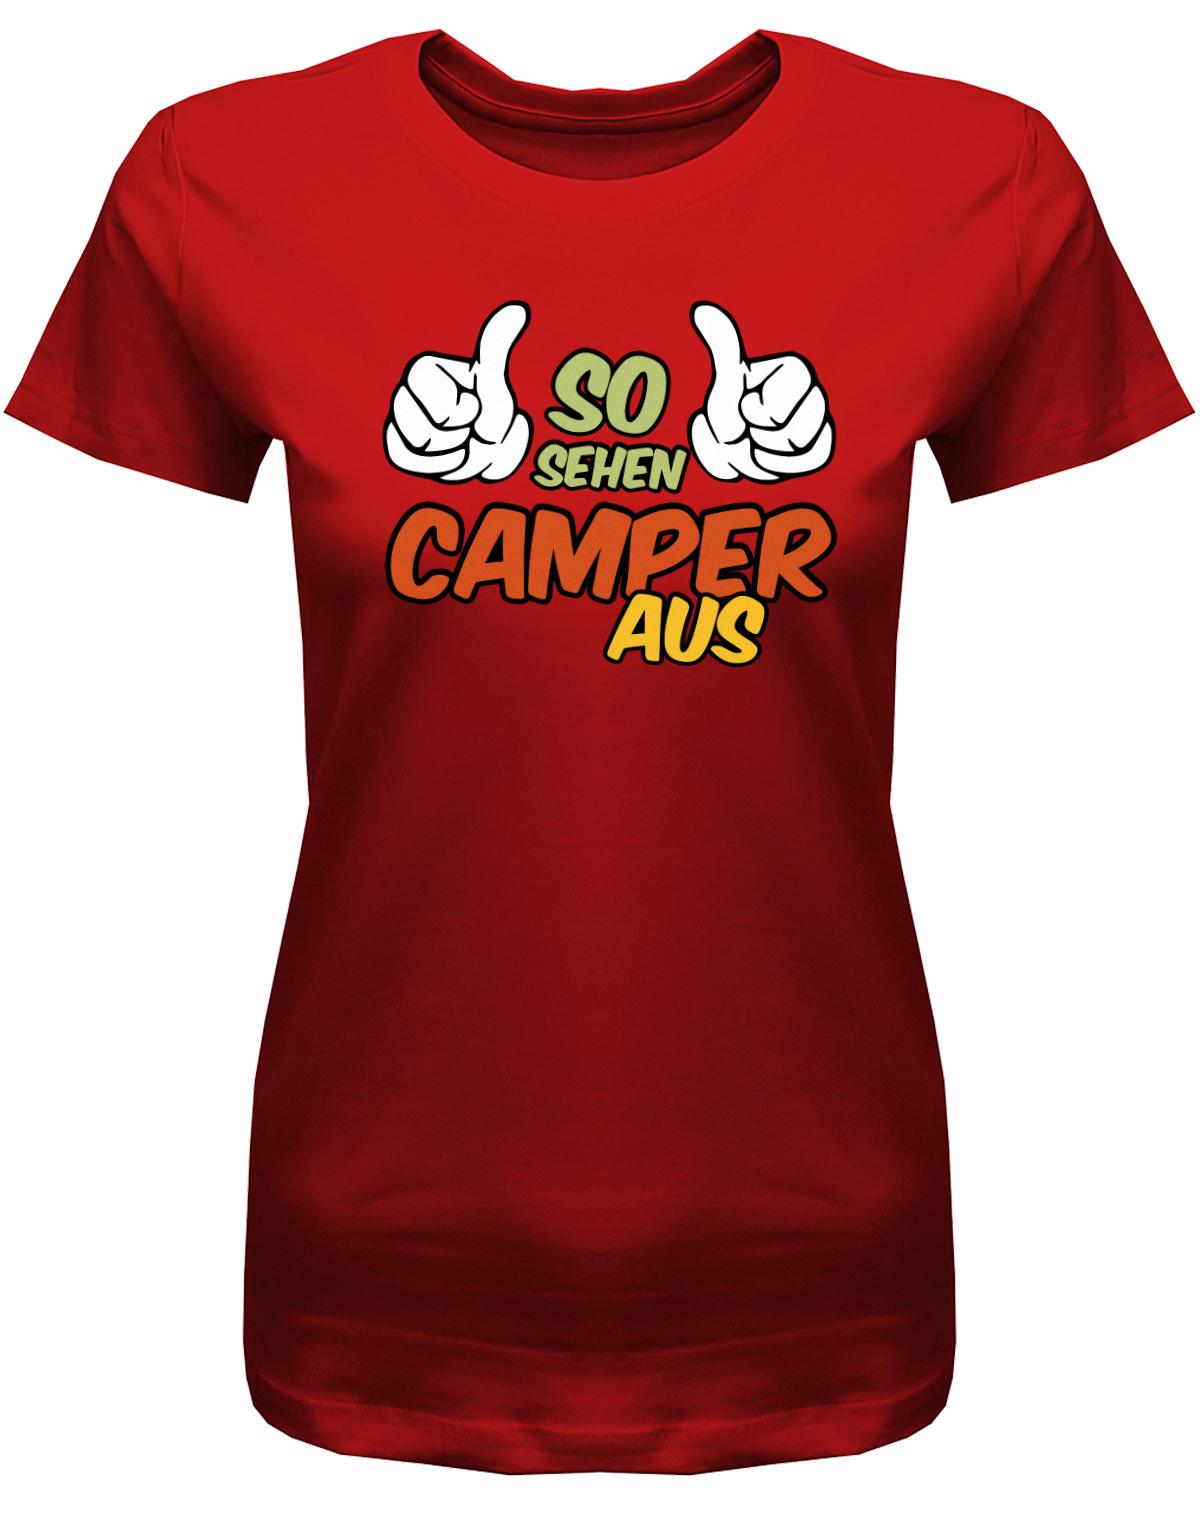 So-sehen-Camper-aus-Damen-Camping-Shirt-rot4kFF9fDa05idt